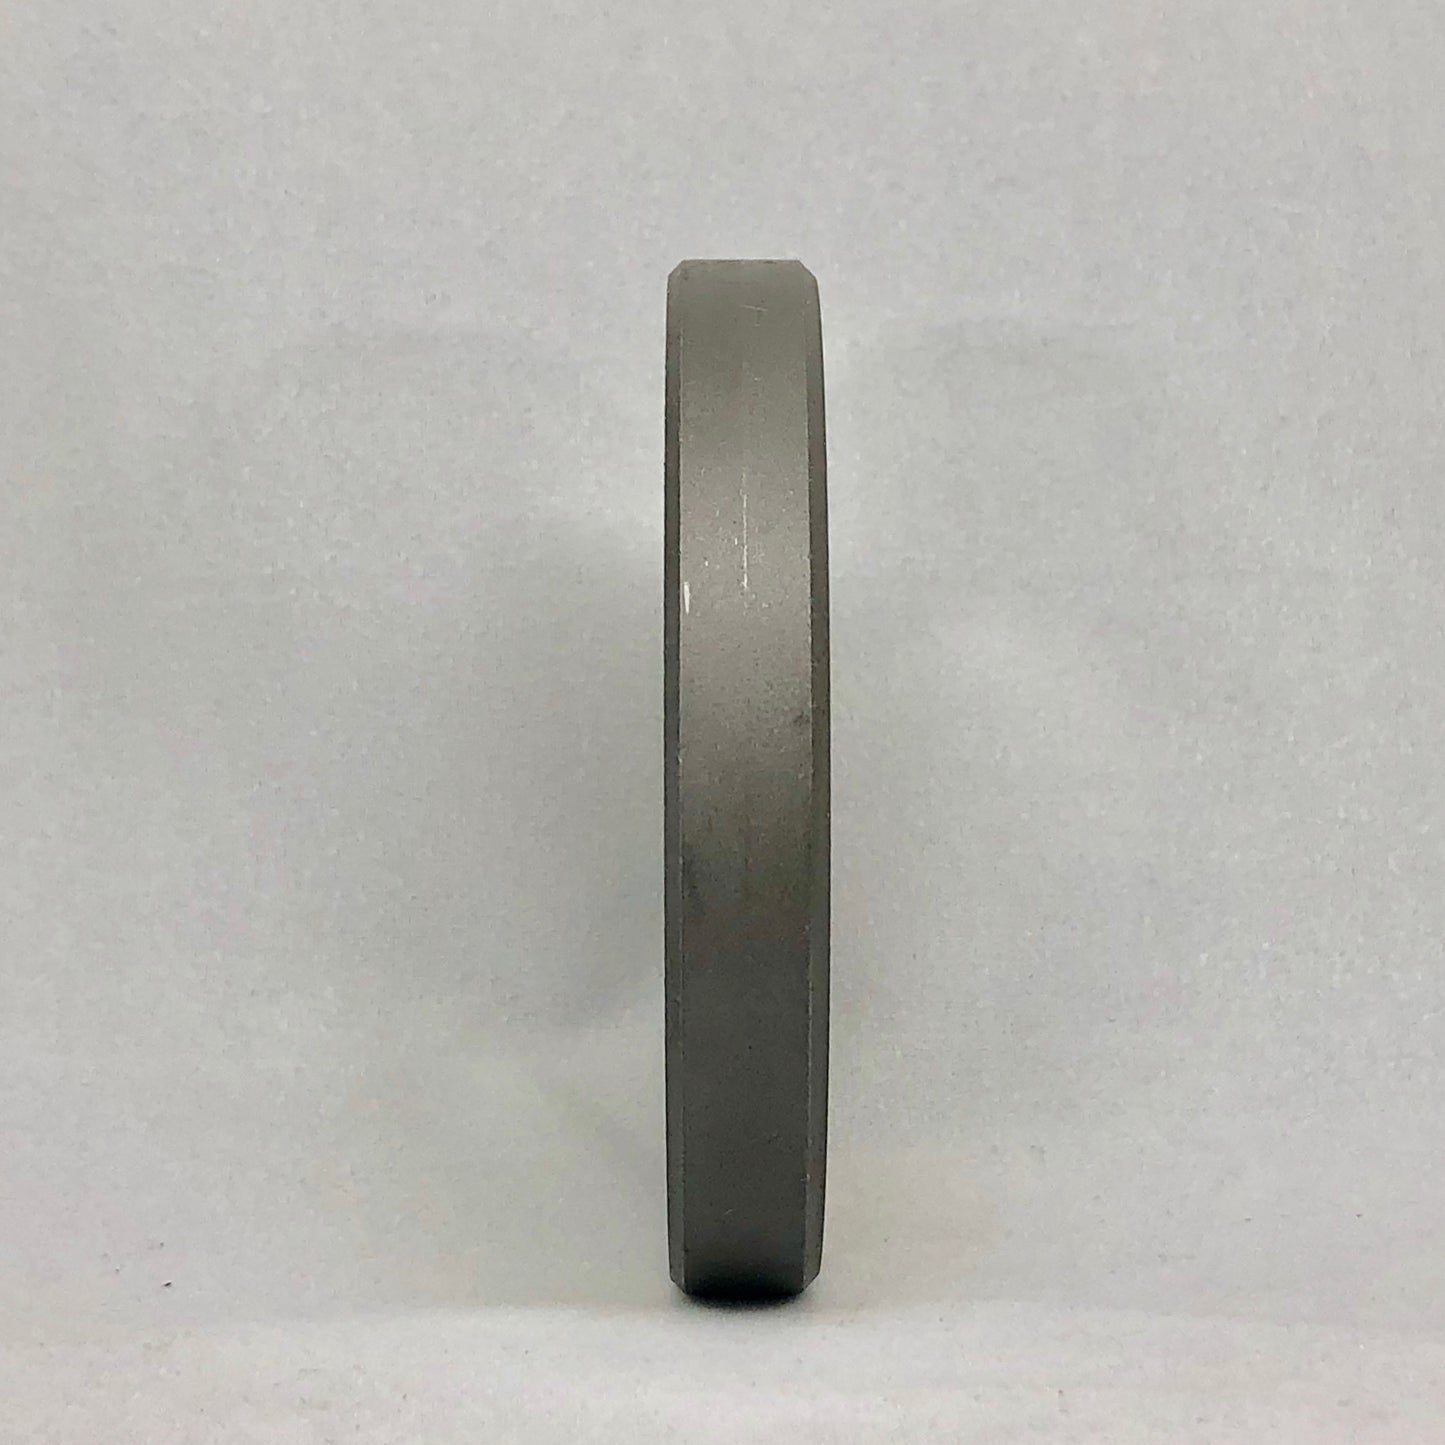 22 TRIUMPH CLEV. 5/16" HOLES - Size 22 Reversible Grinder Plate - 102606